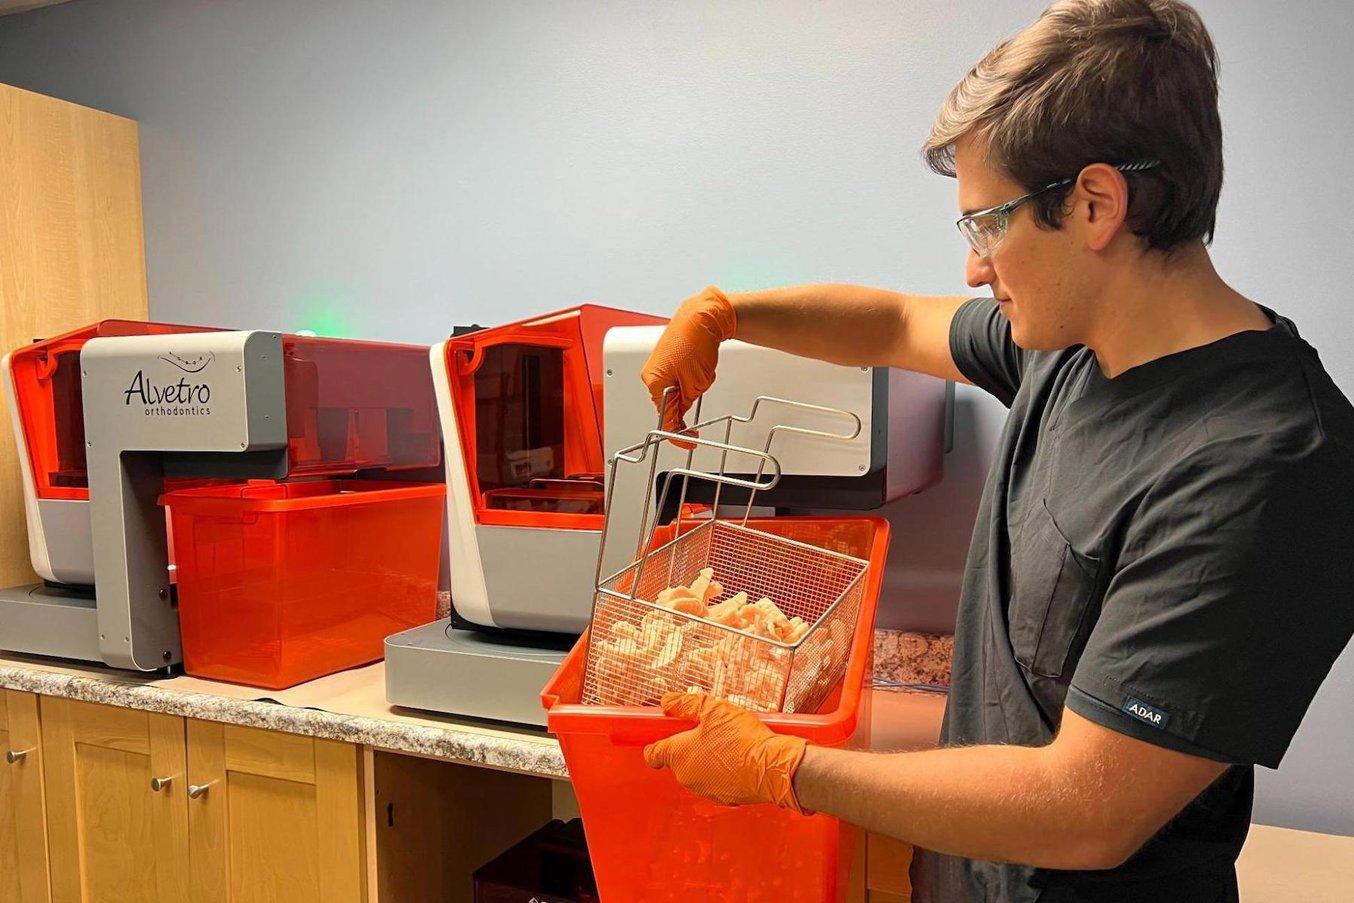 Une personne retire un panier de modèles imprimés en 3D d'un bac situé à côté des imprimantes Form 3B+ et Form Auto 